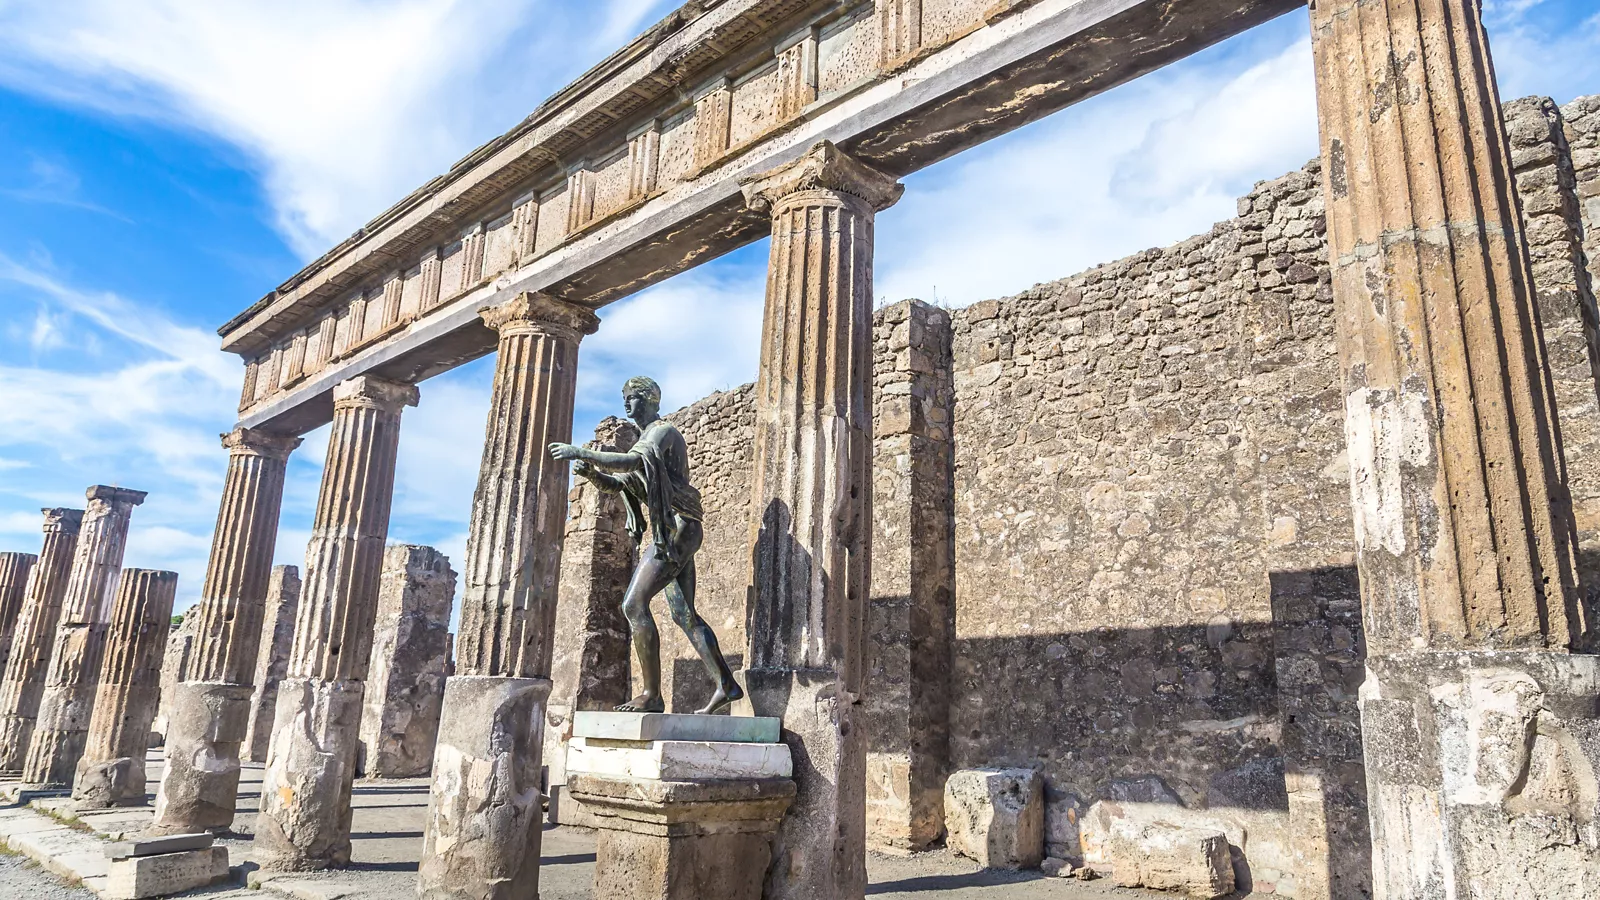 Alla scoperta di Pompei, Ercolano e Torre Annunziata